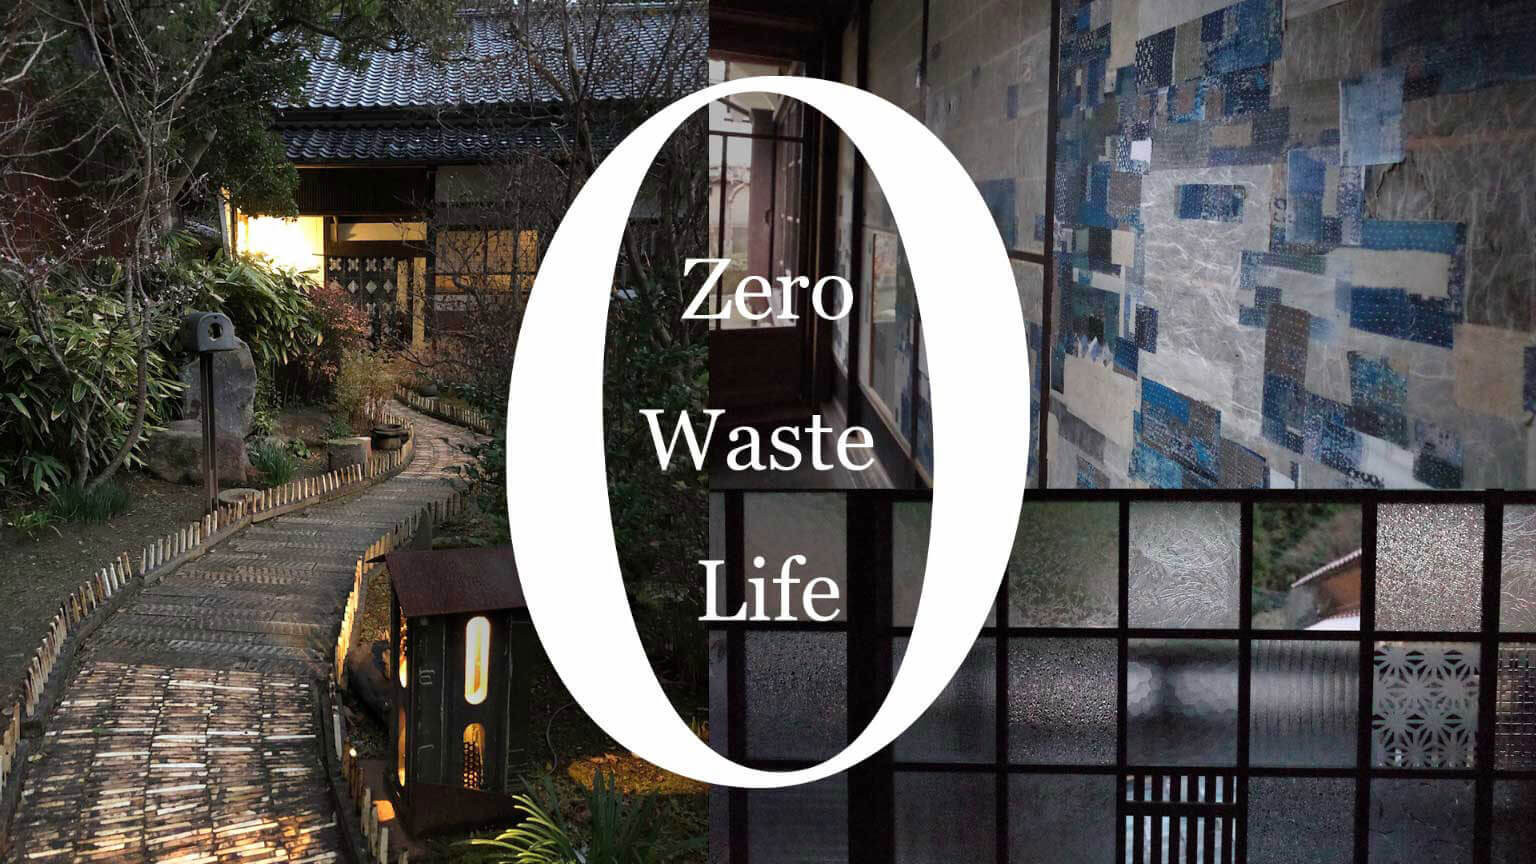 Lối sống Không lãng phí
Zero Waste Life